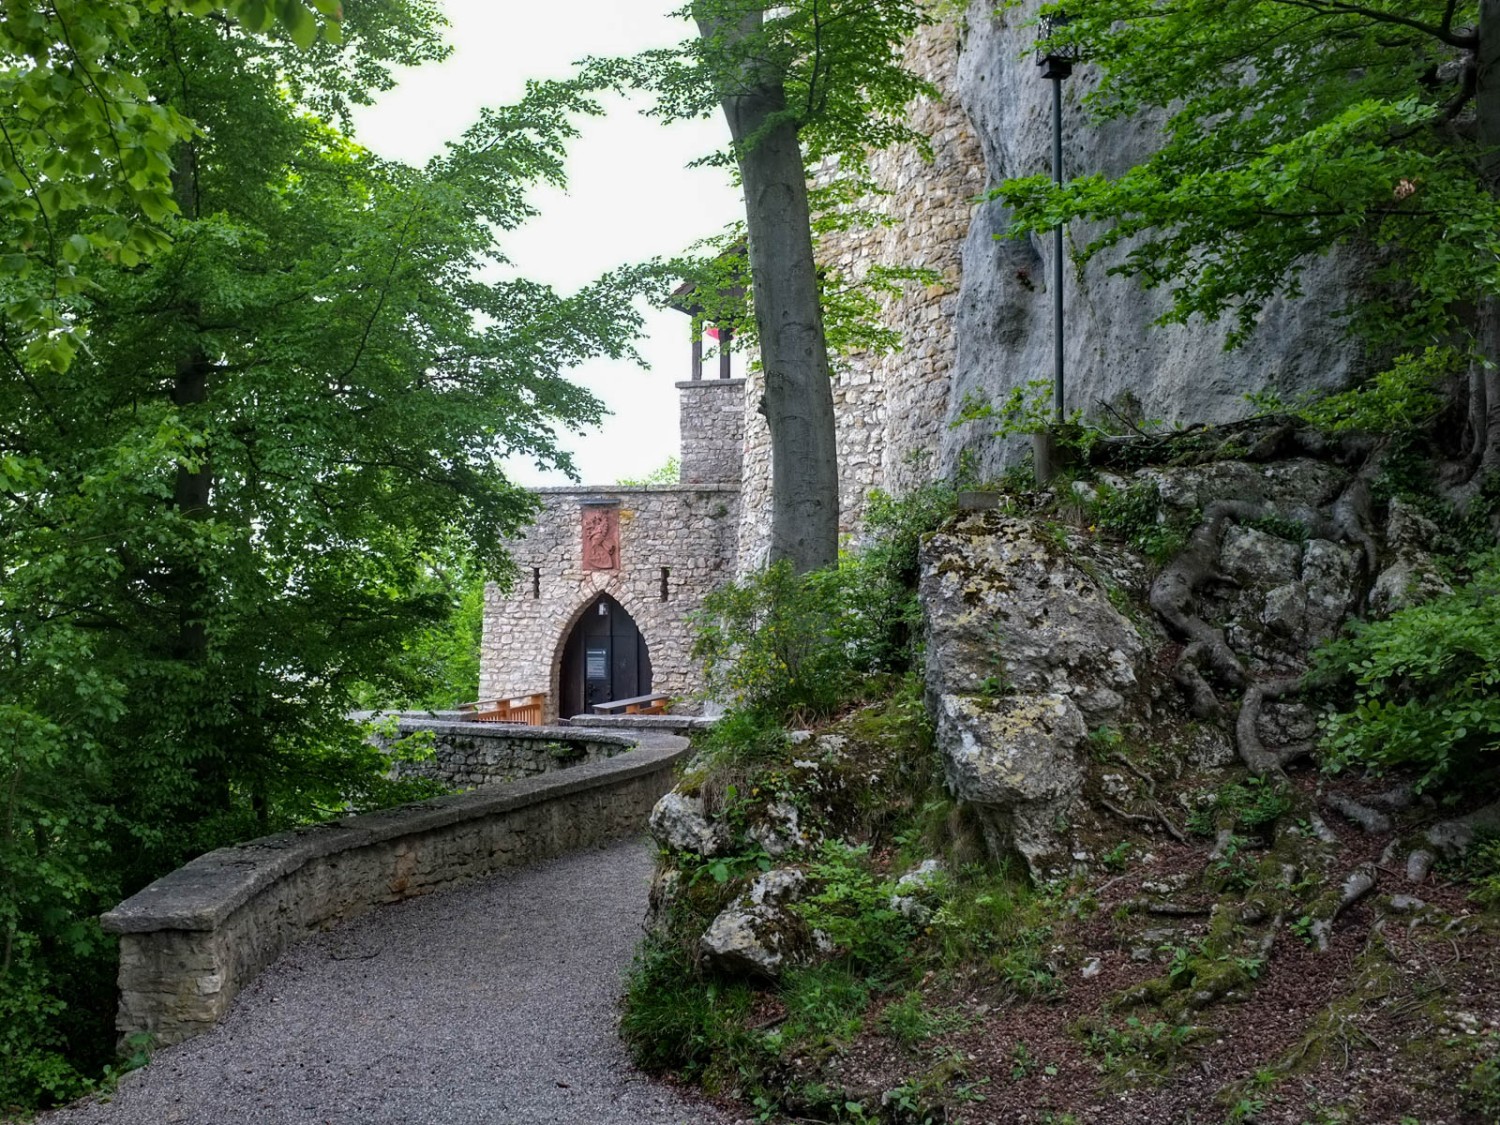 Die Burg wurde in einen steil abfallenden Felssporn gehauen. Bild: Claudia Peter
 
